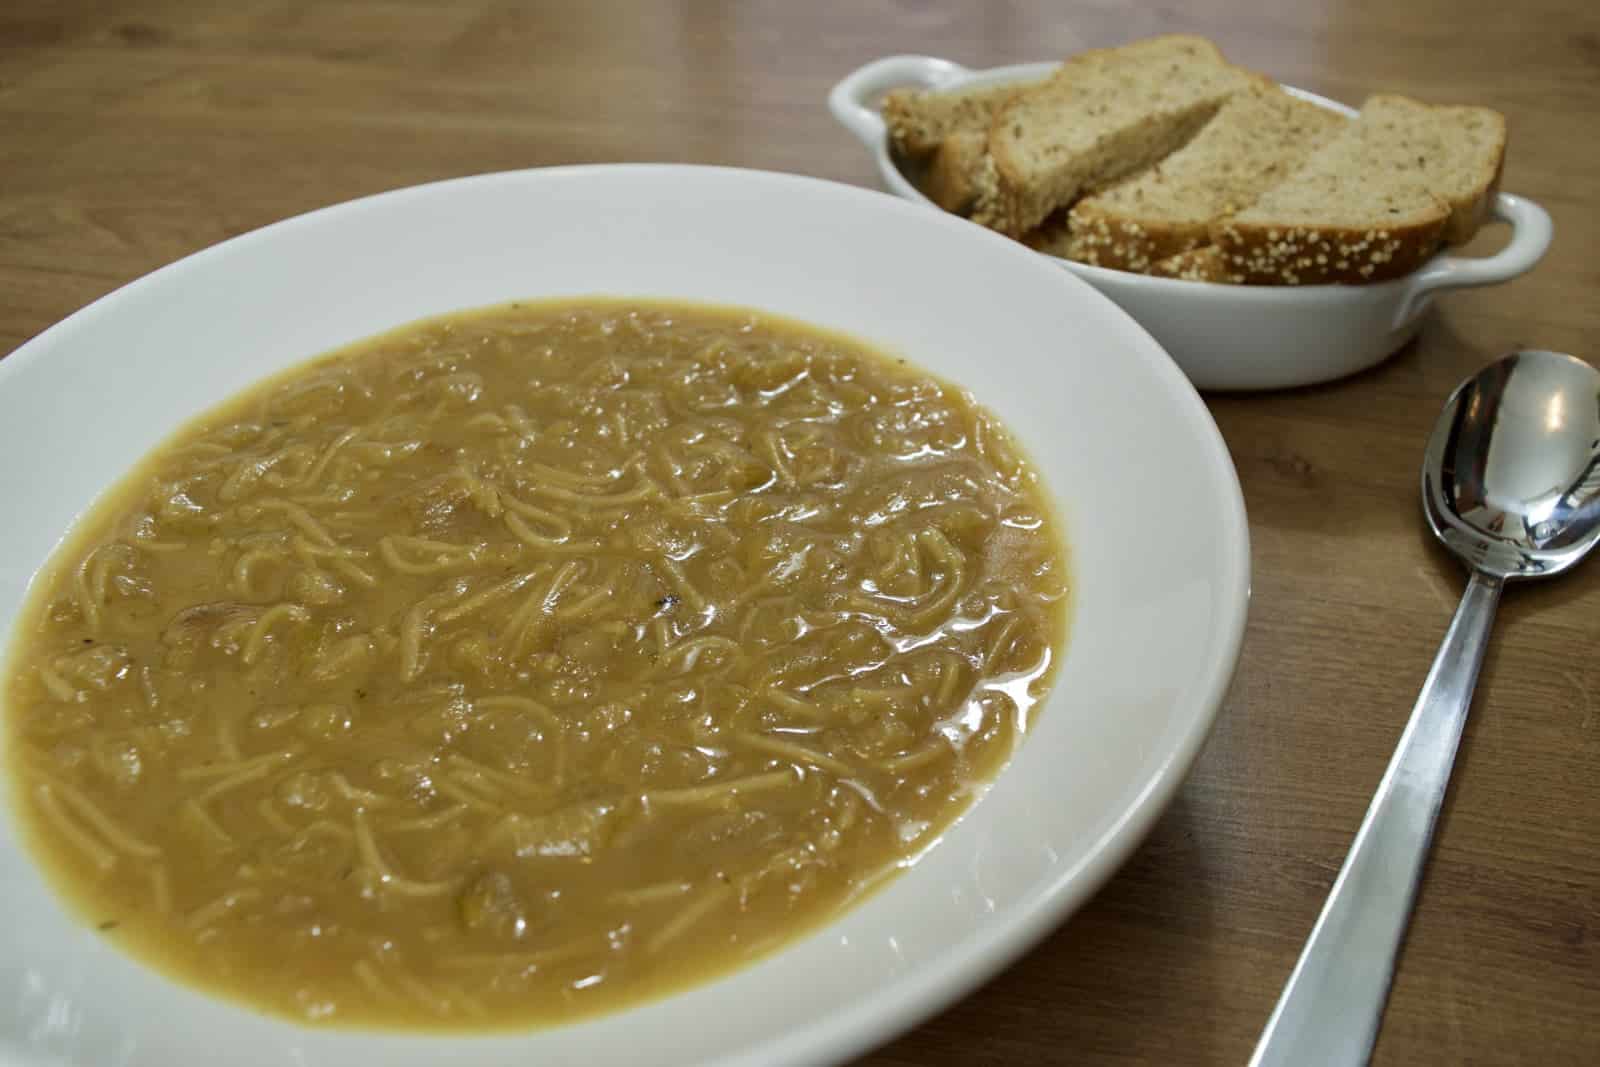 Quais são os benefícios da sopa de cebola?Qual é a diferença entre creme de cebola e sopa de cebola?
Como se diz sopa de cebola em francês?
Quem inventou a sopa de cebola?
